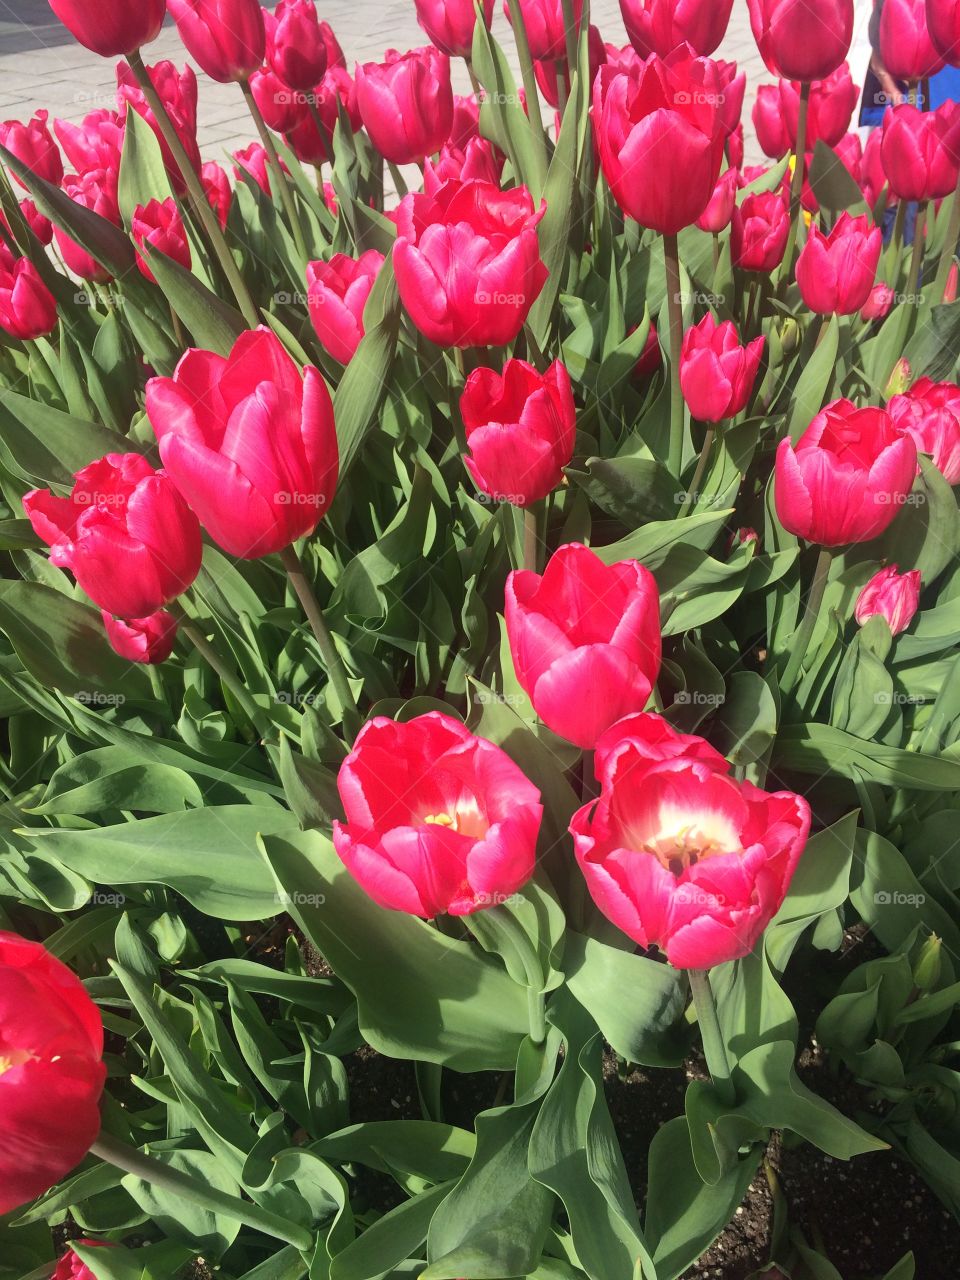 Tulpen - in meiner Lieblingsfarbe pink 🌷